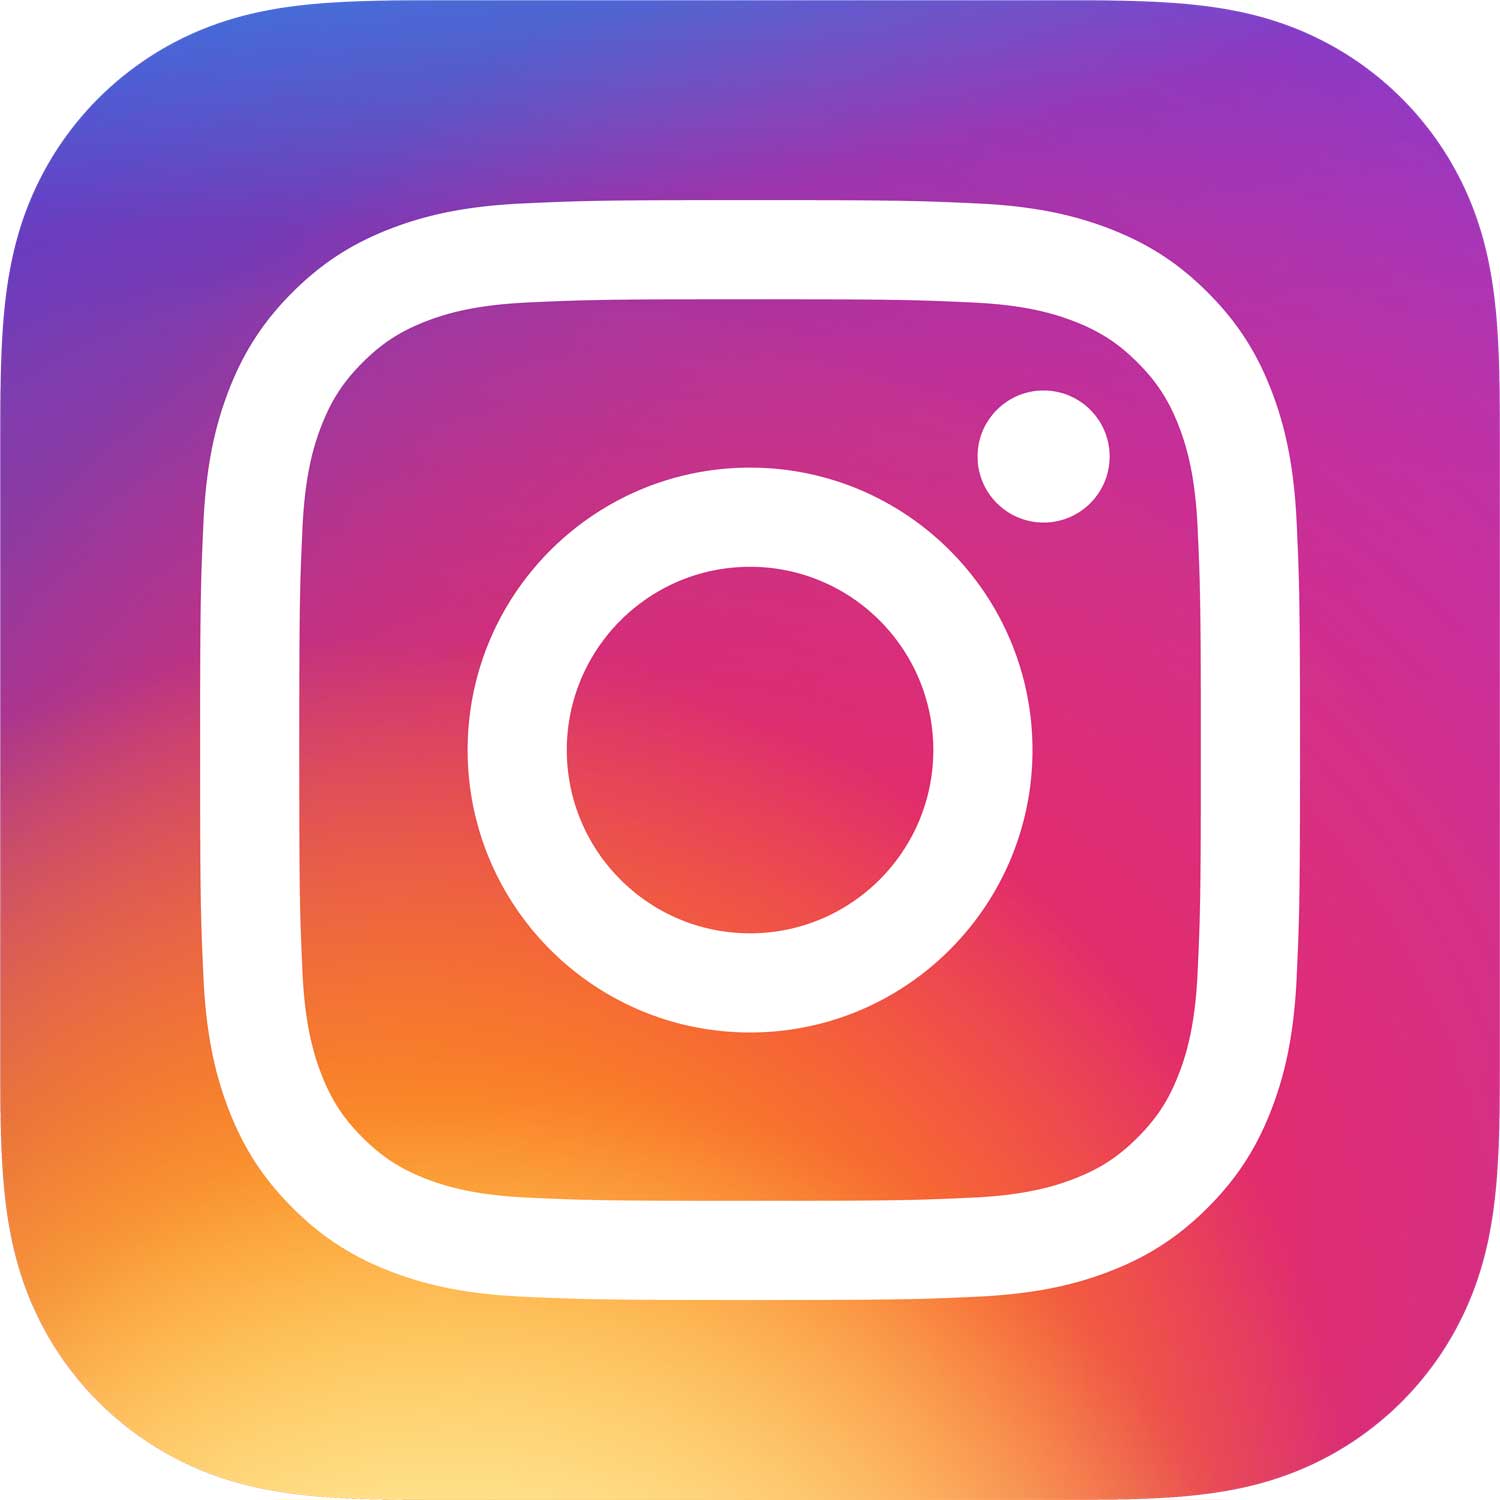 Spy Kowlik bei Instagram